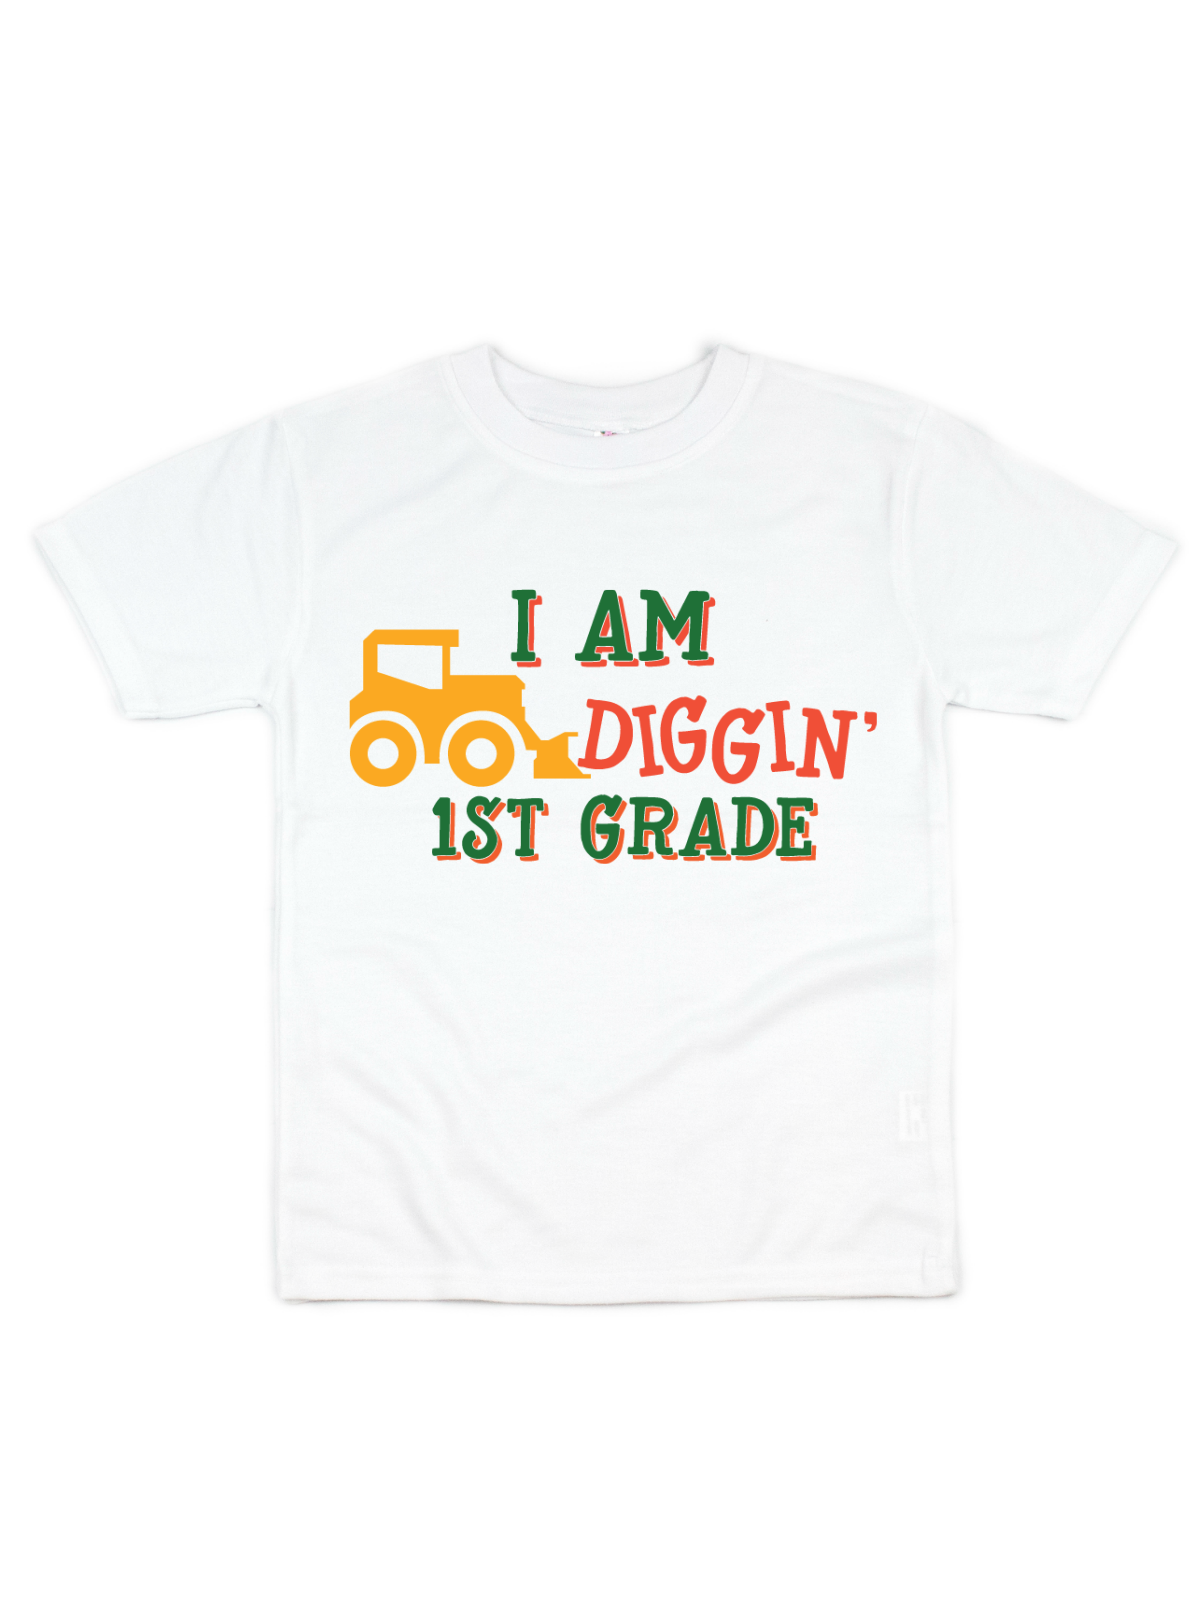 I am digging 1st grade kids school shirt